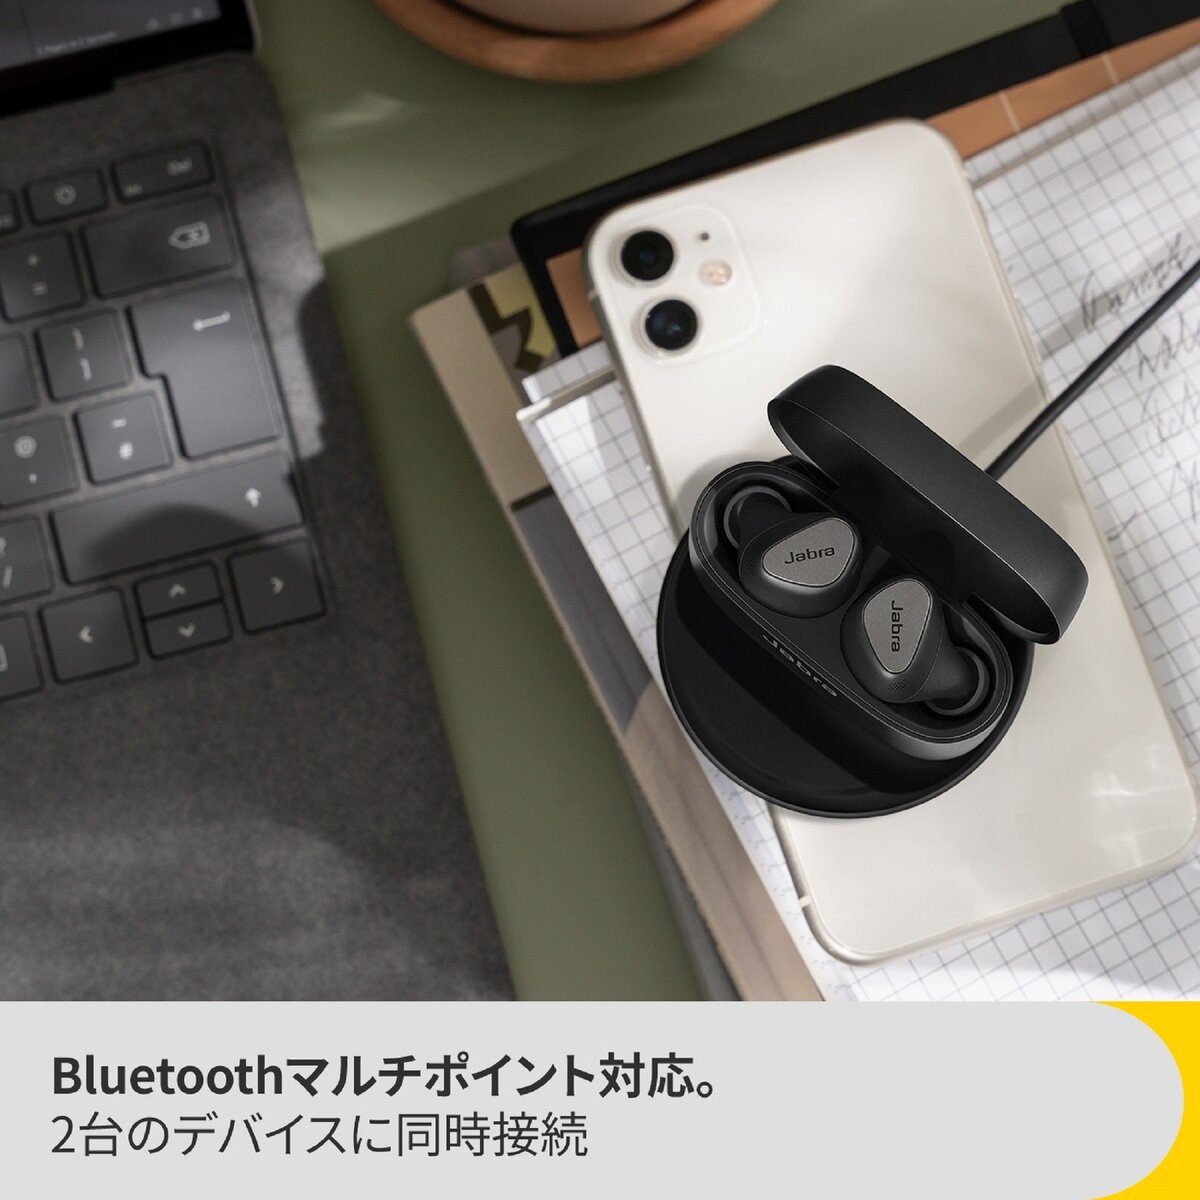 Jabra 完全ワイヤレスイヤホン コネクト 5t ワイヤレス充電パッド付属 Costco Japan